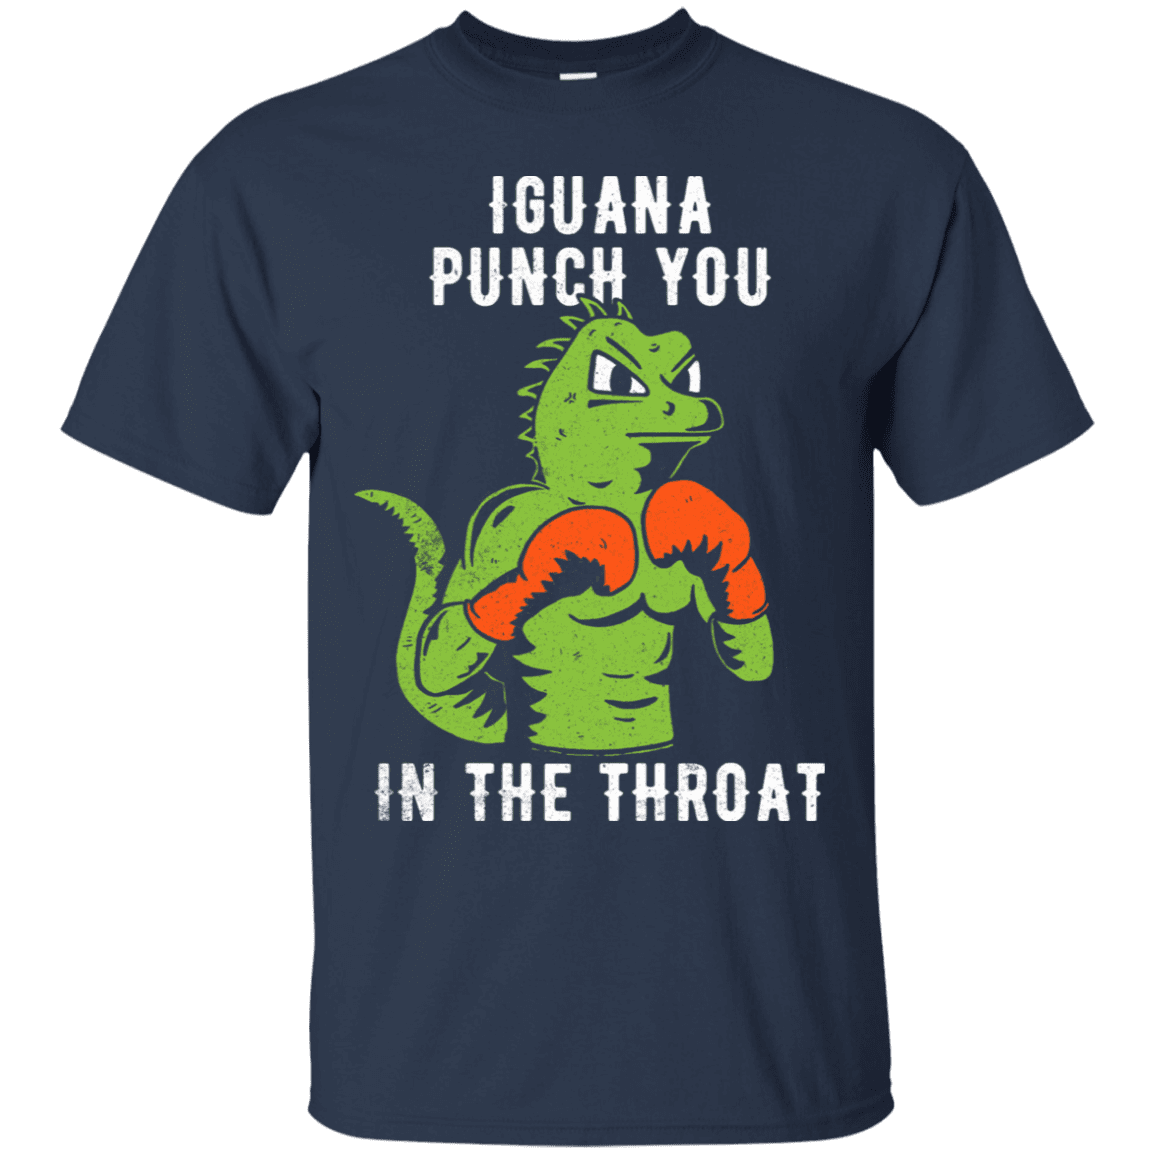 T-Shirts Navy / S Iguana Punch You T-Shirt